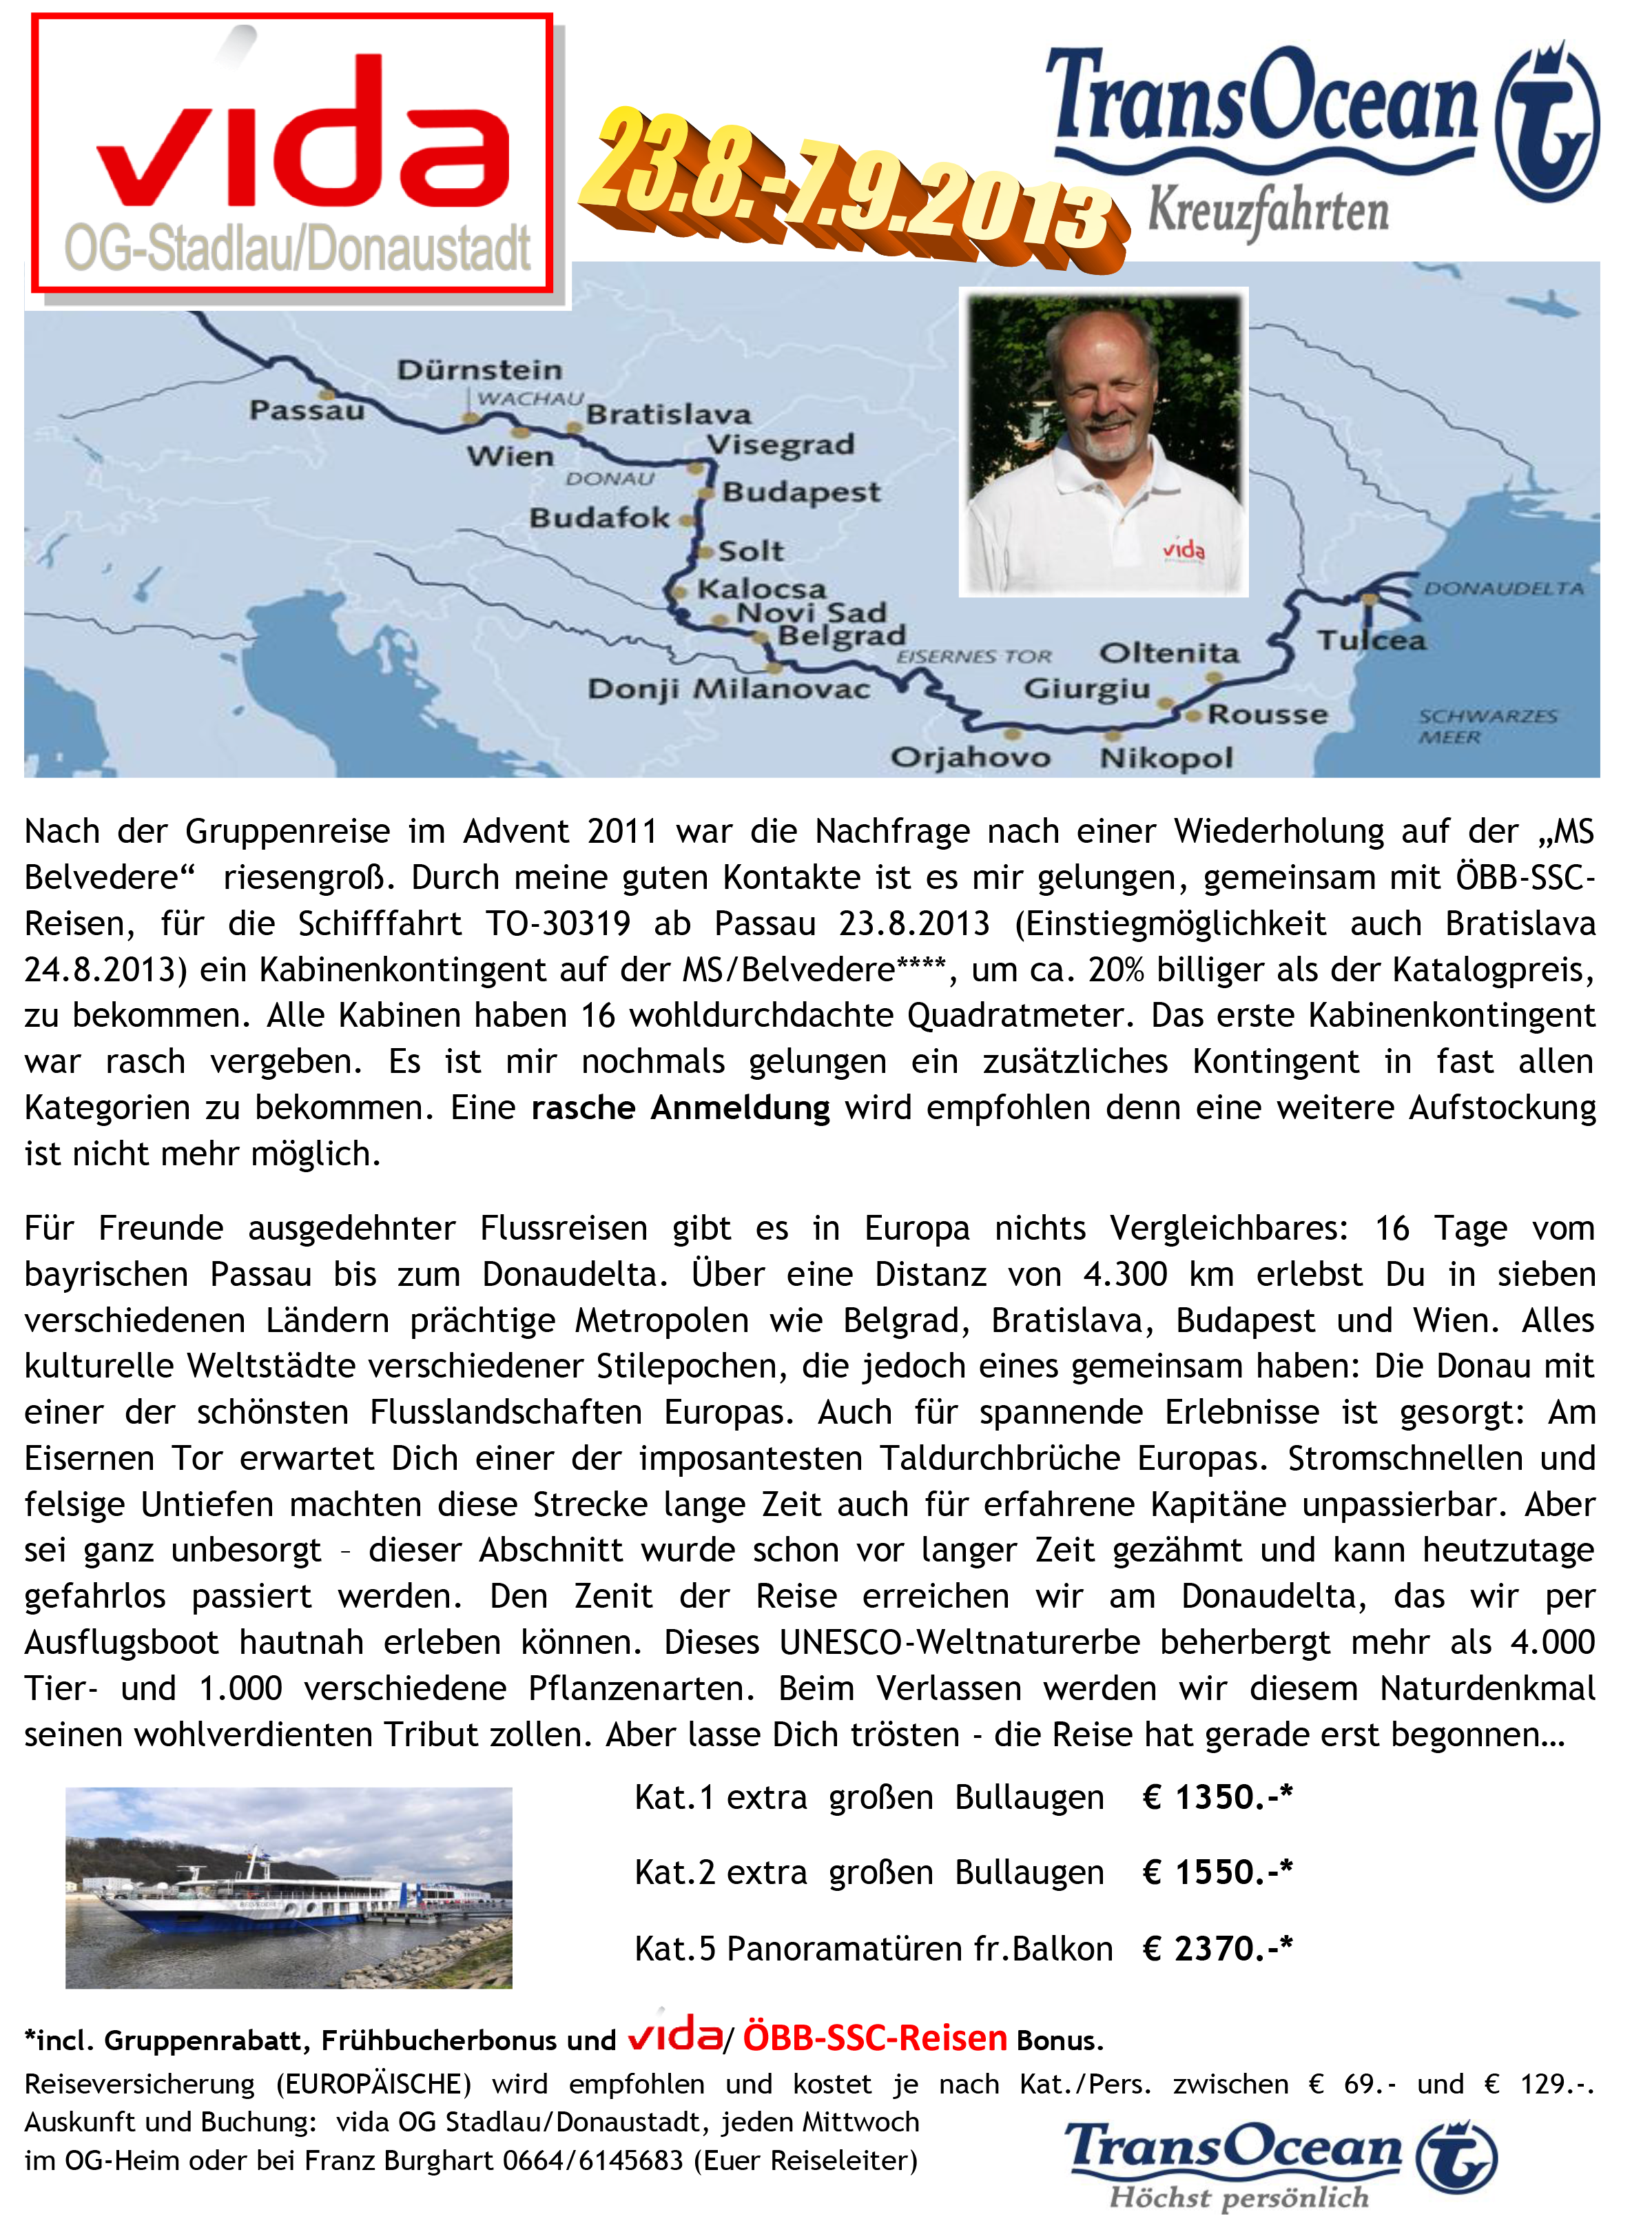 Donaudeltafahrt vida SSC - Zeitung